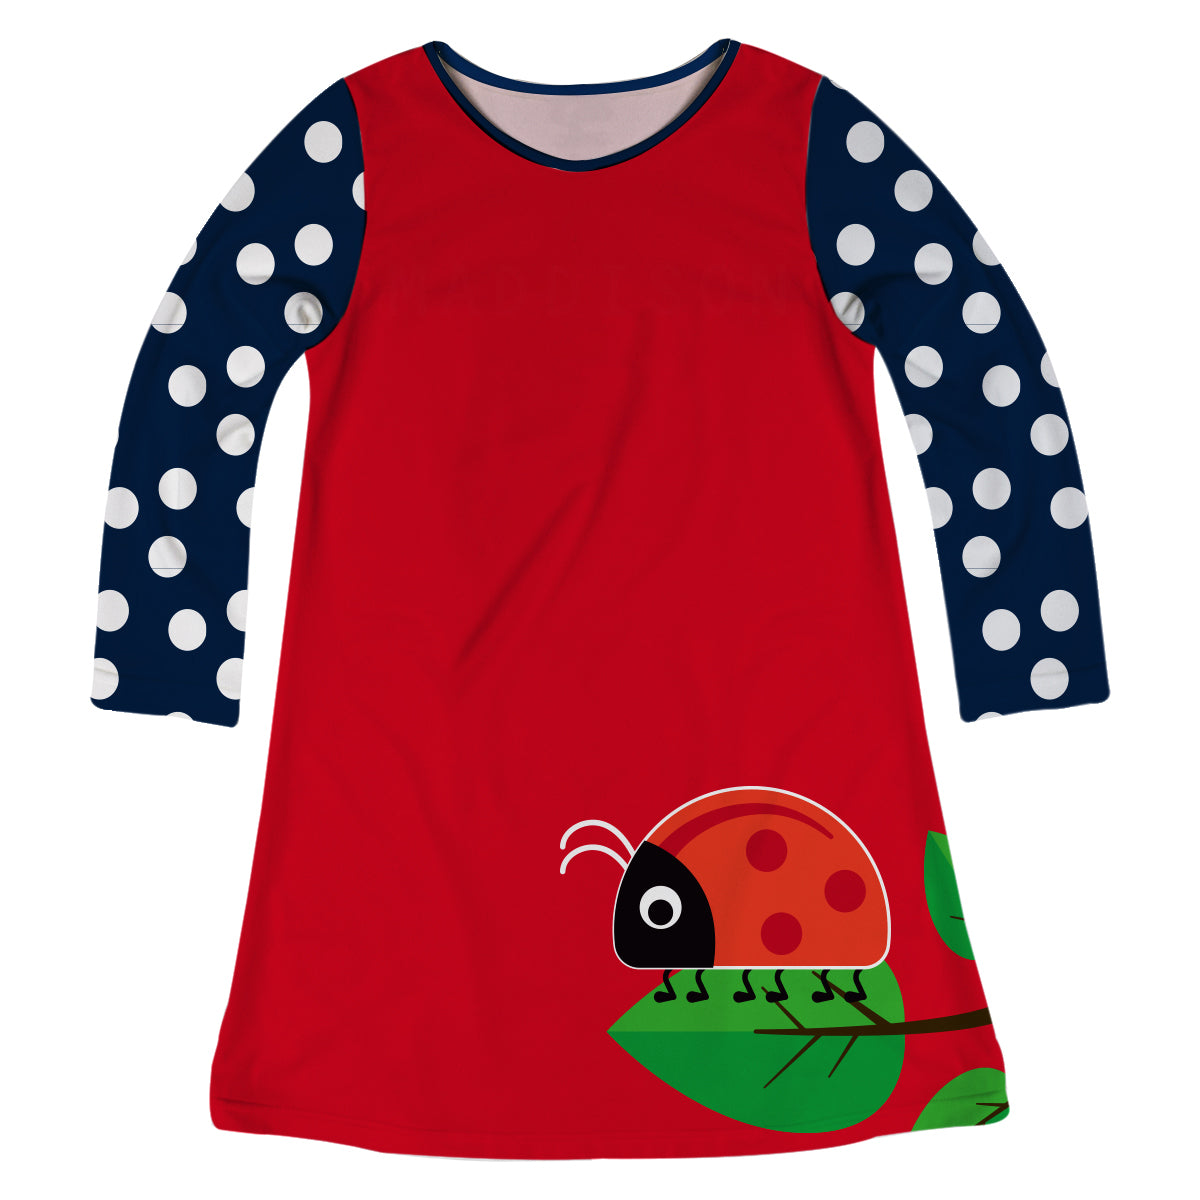 Ladybug Name Red Long Sleeve A Line Dress - Wimziy&Co.